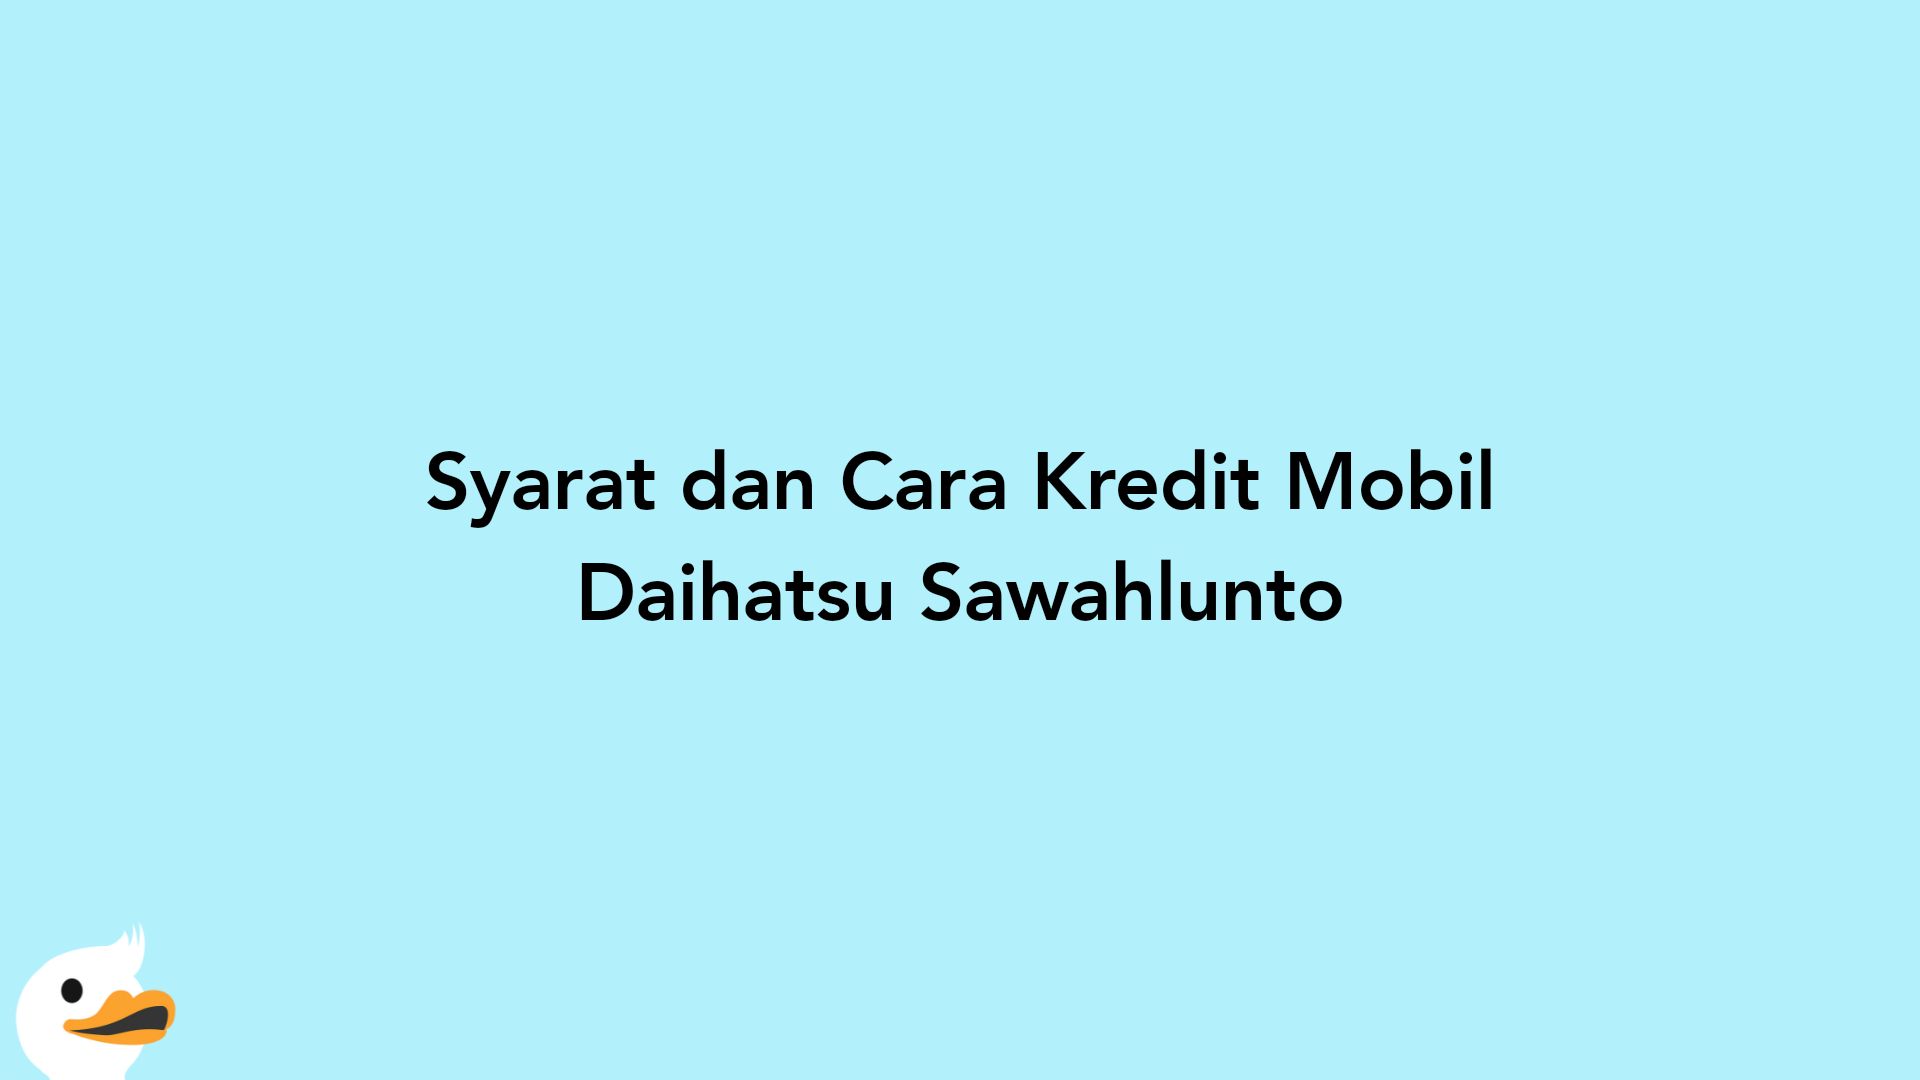 Syarat dan Cara Kredit Mobil Daihatsu Sawahlunto